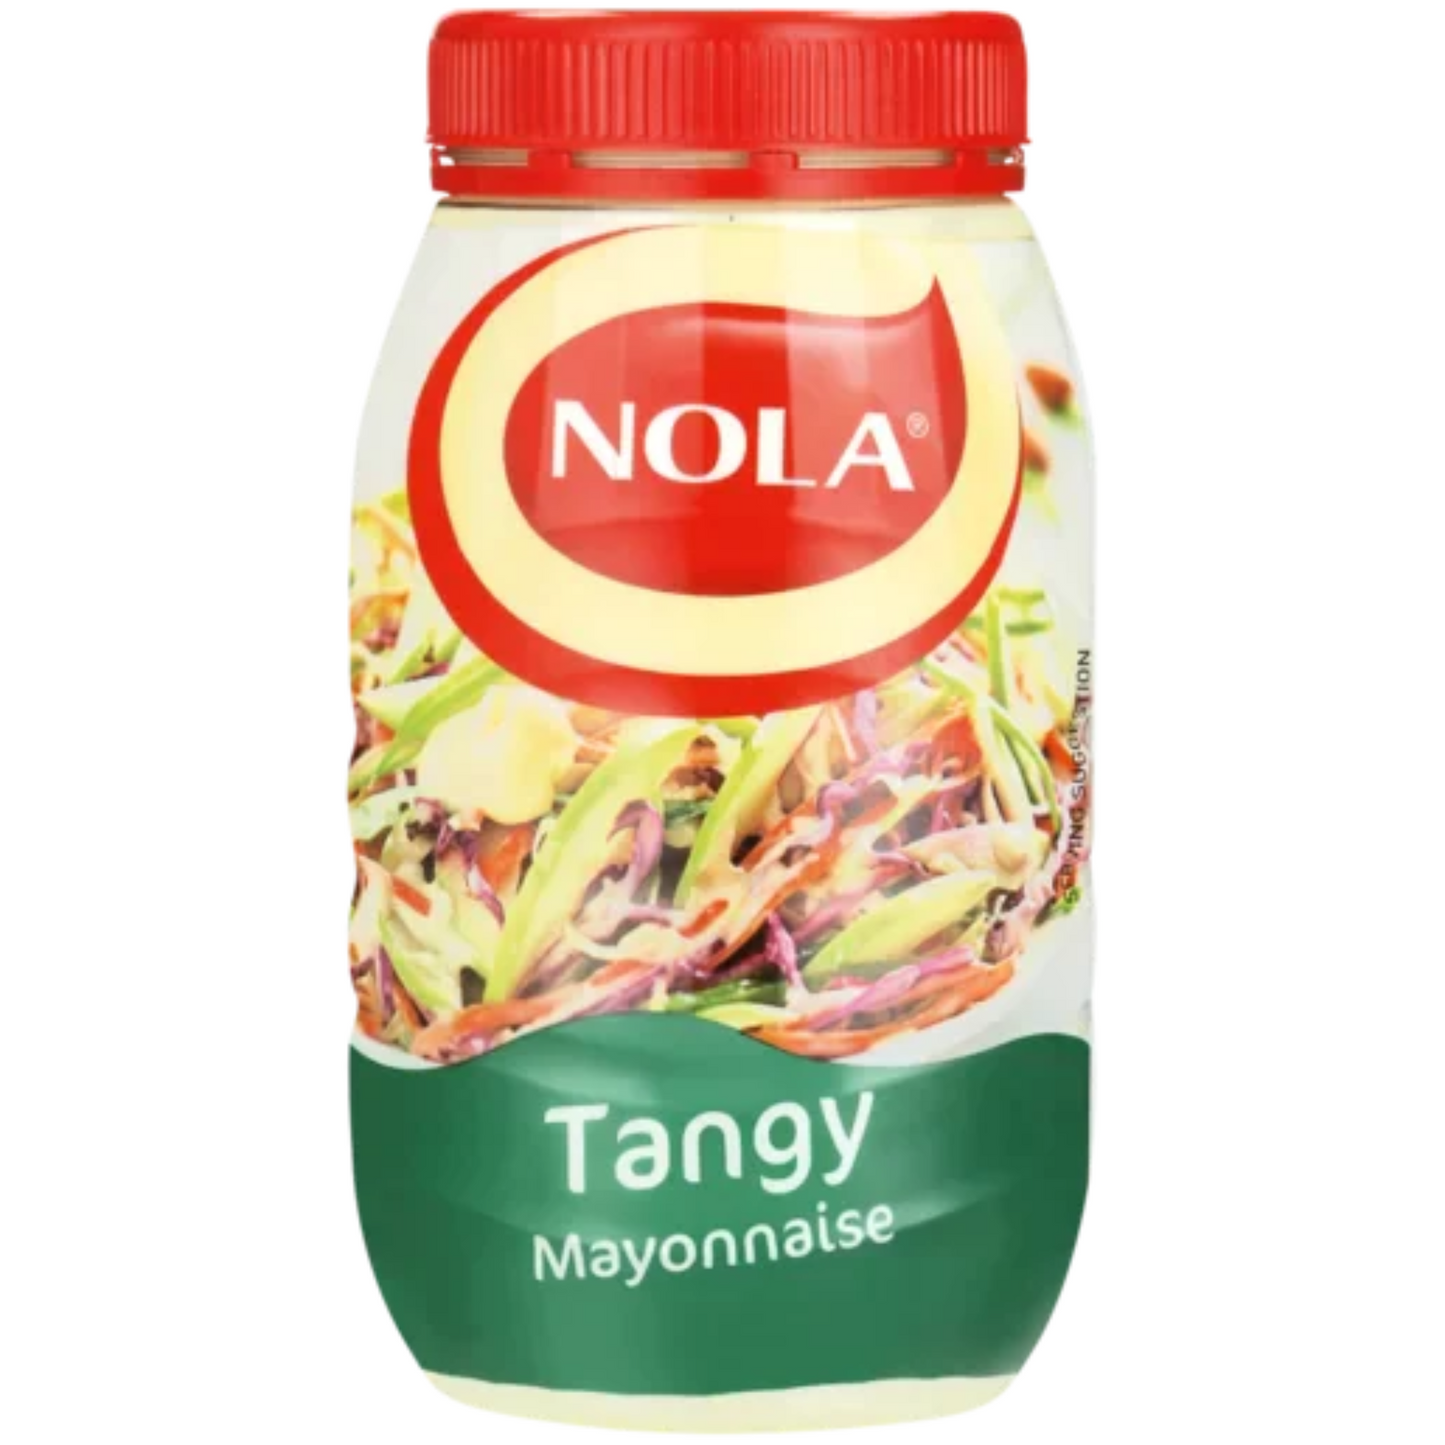 Nola Tangy Mayonnaise 750gm